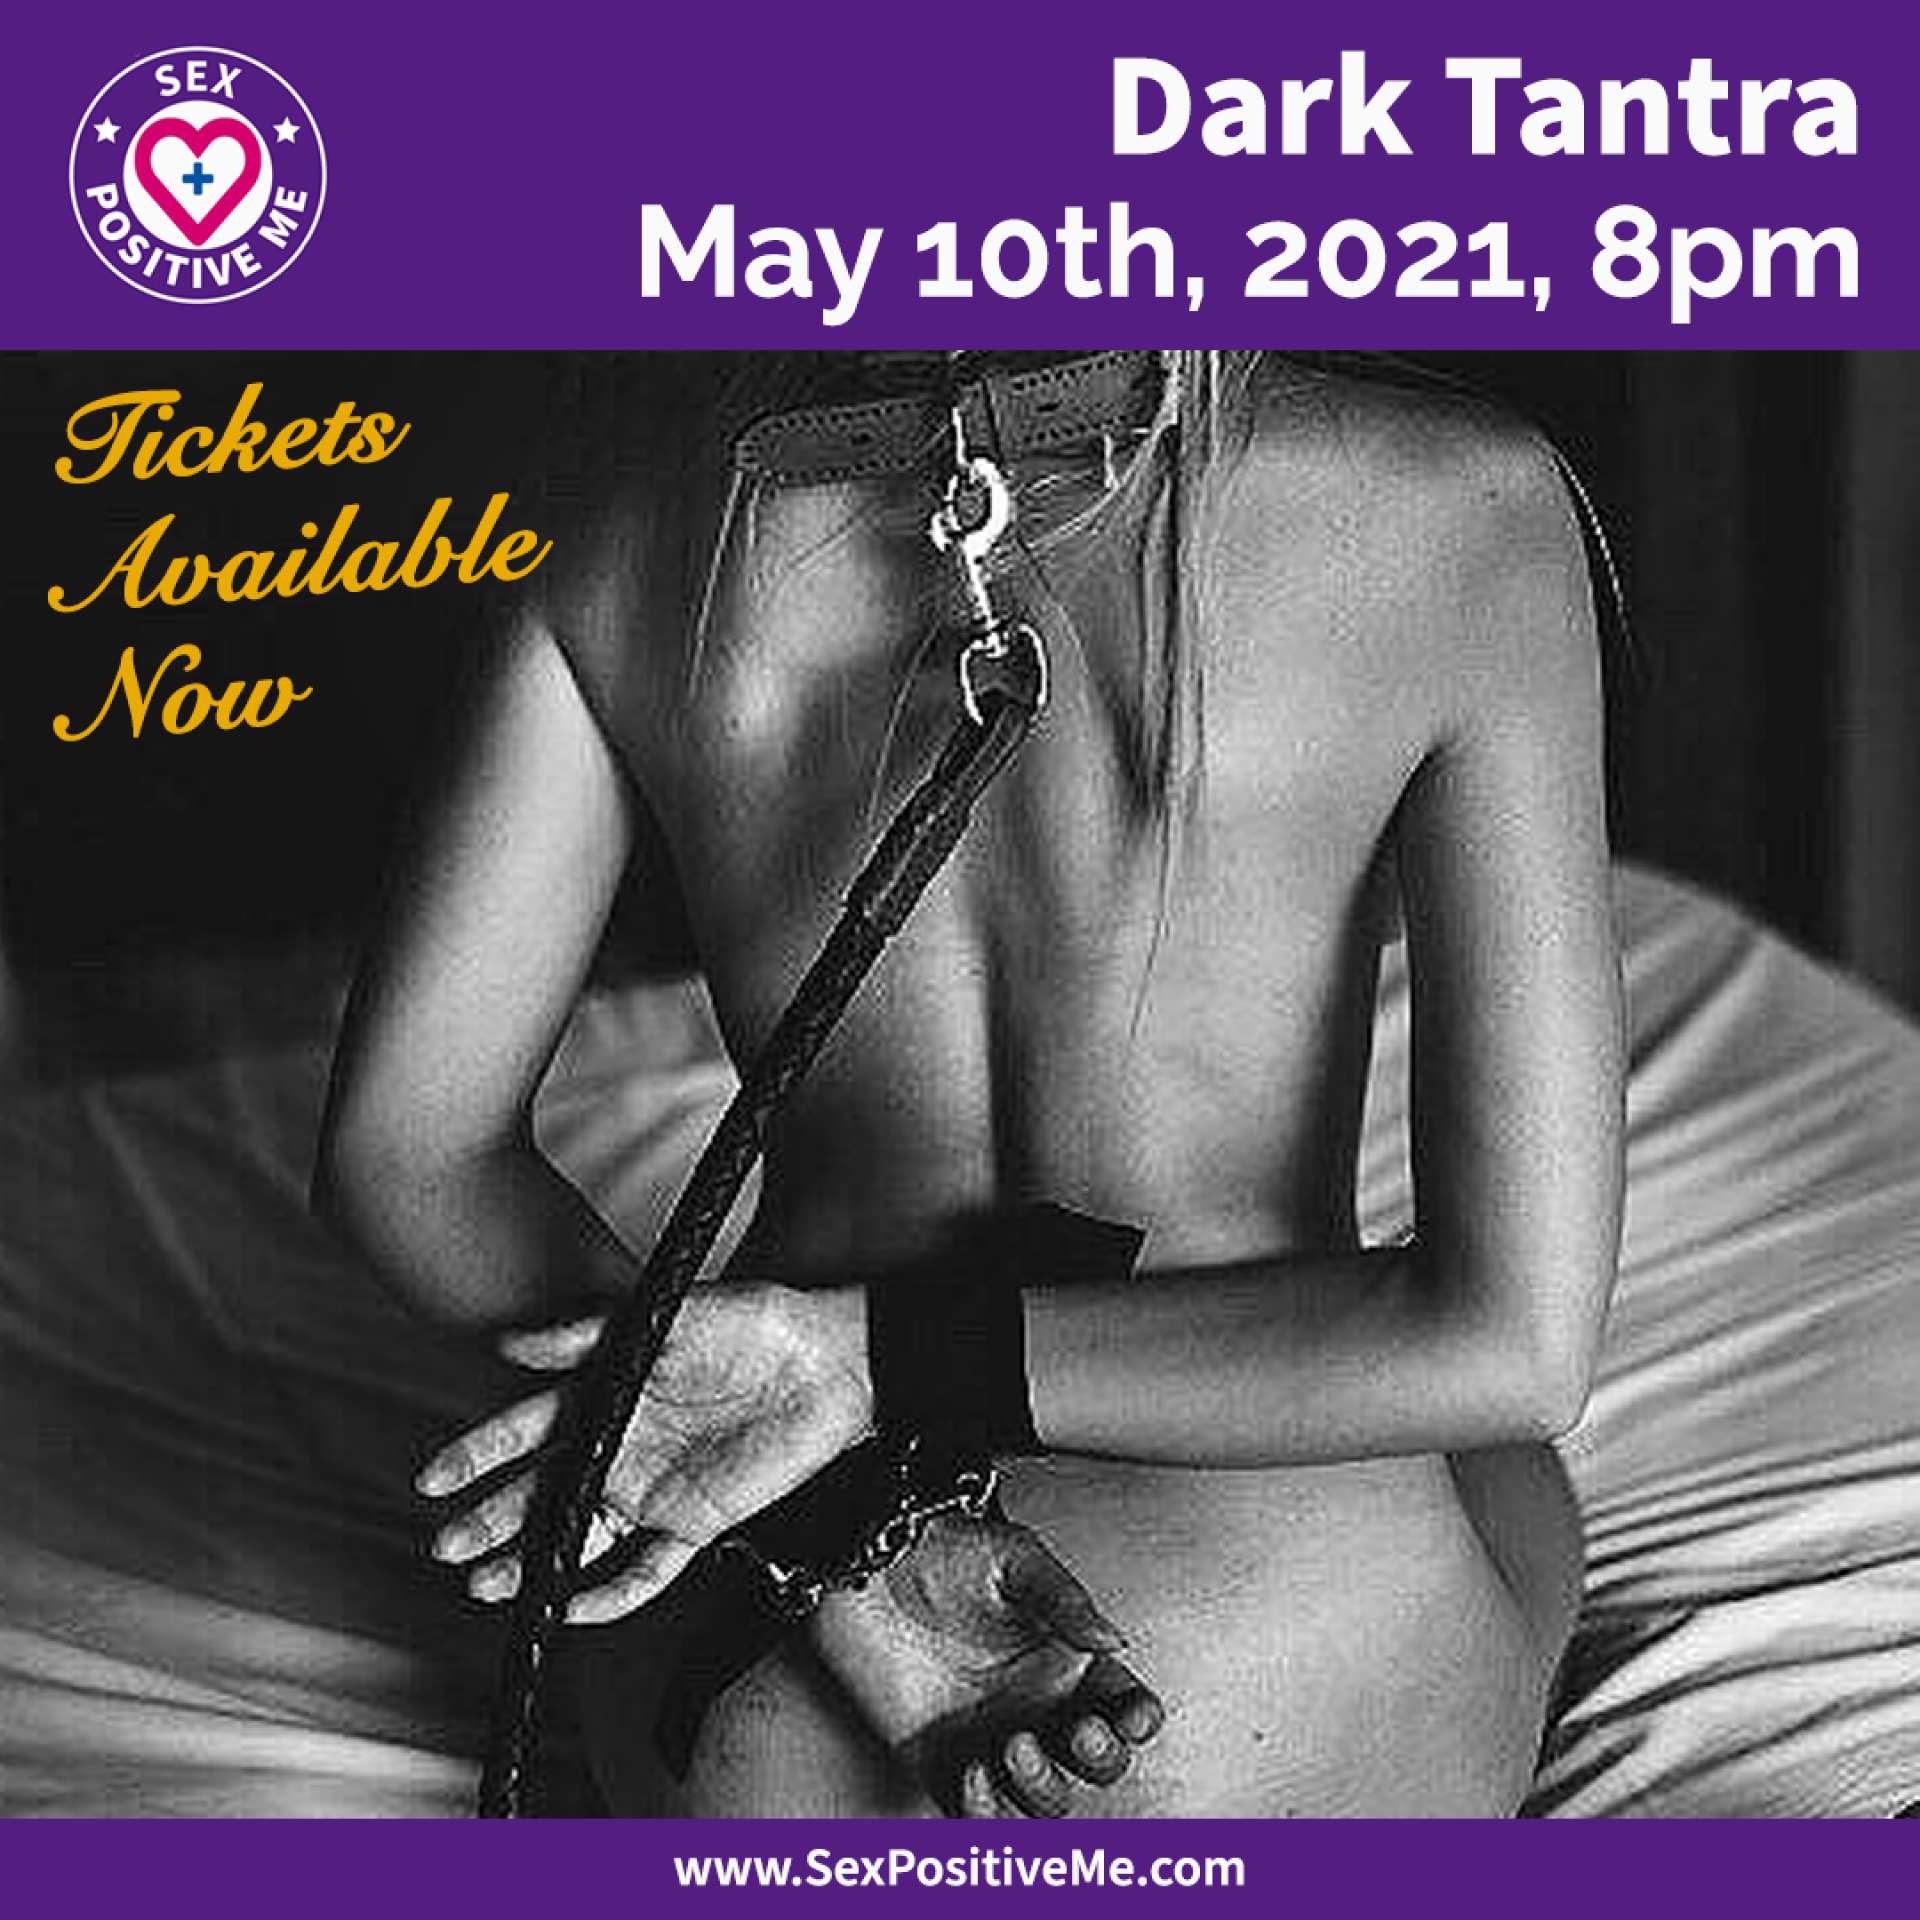 Dark Tantra